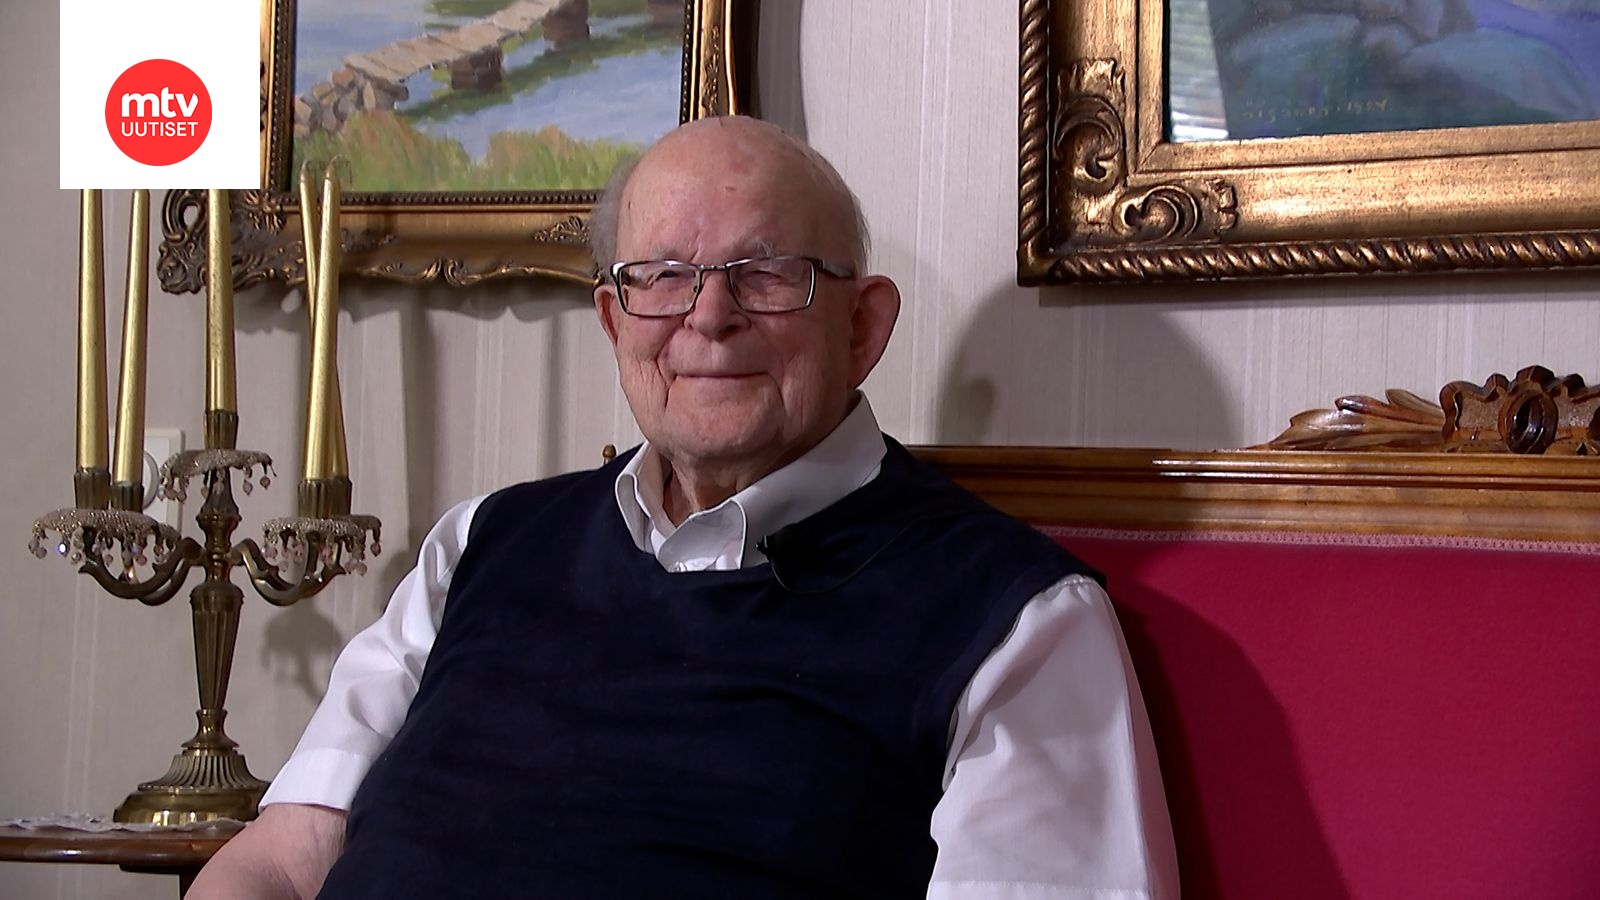 Kolmen sodan taistellut veteraani Eero, 100, on Suomen vanhimman  aatelissuvun vanhin jäsen 